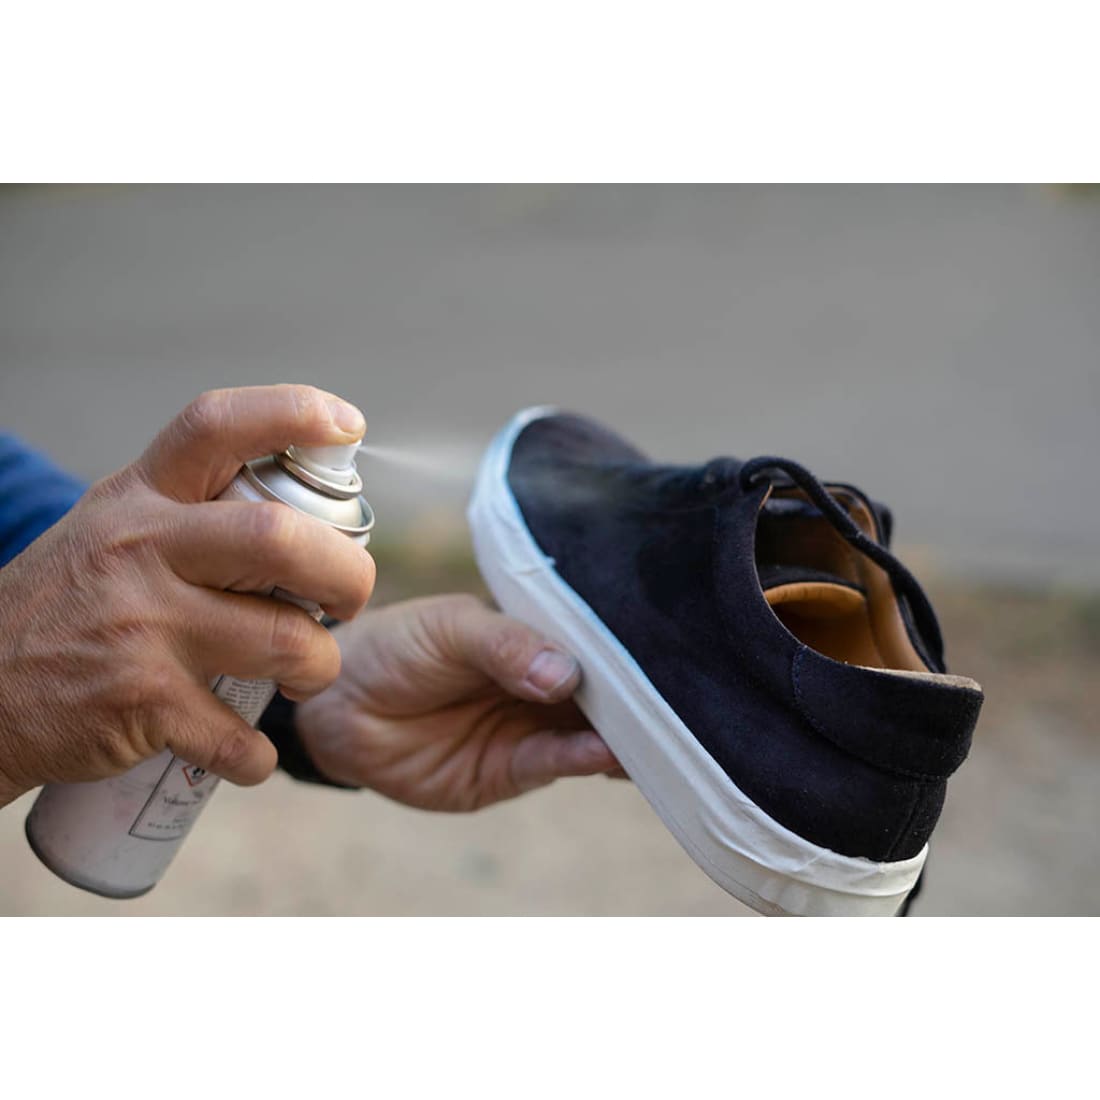 Spray imperméabilisant pour chaussures 150 ml - Spray d